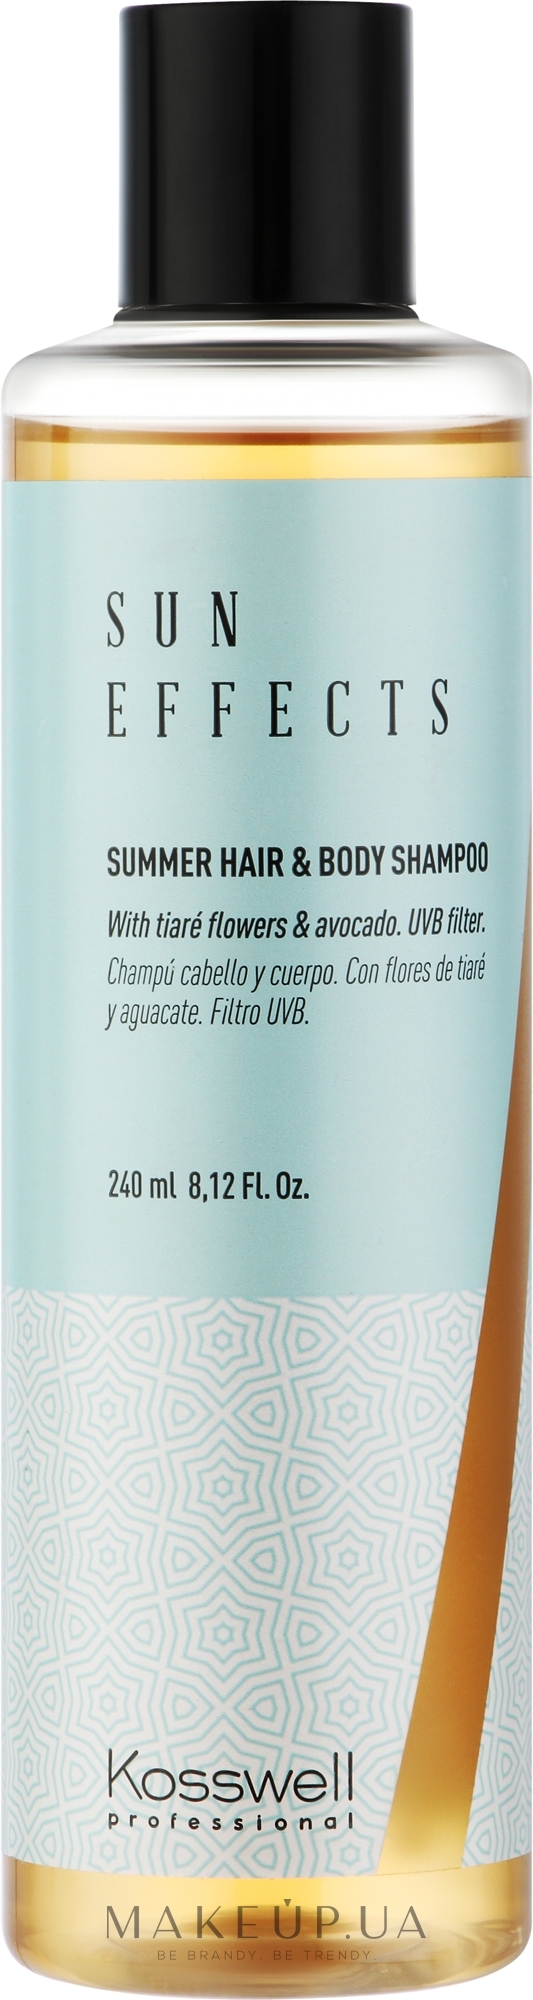 Шампунь для защиты волос и тела от солнца - Kosswell Professional Sun Effects Summer Hair & Body Shampoo — фото 240ml